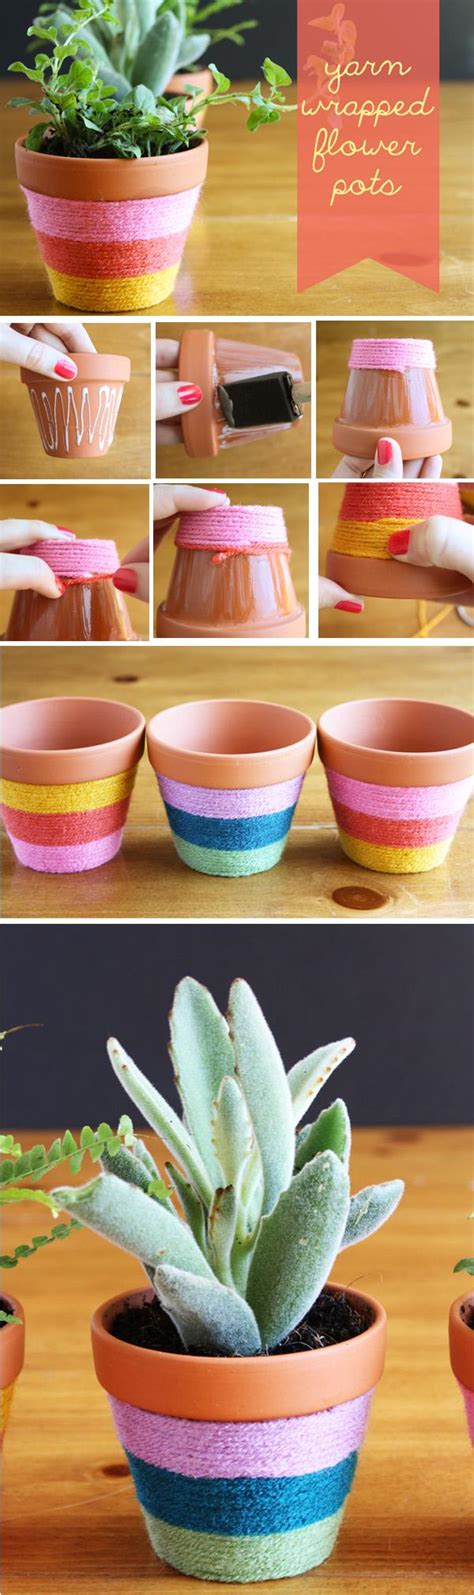 40 Diy Flower Pot Ideas Art And Design